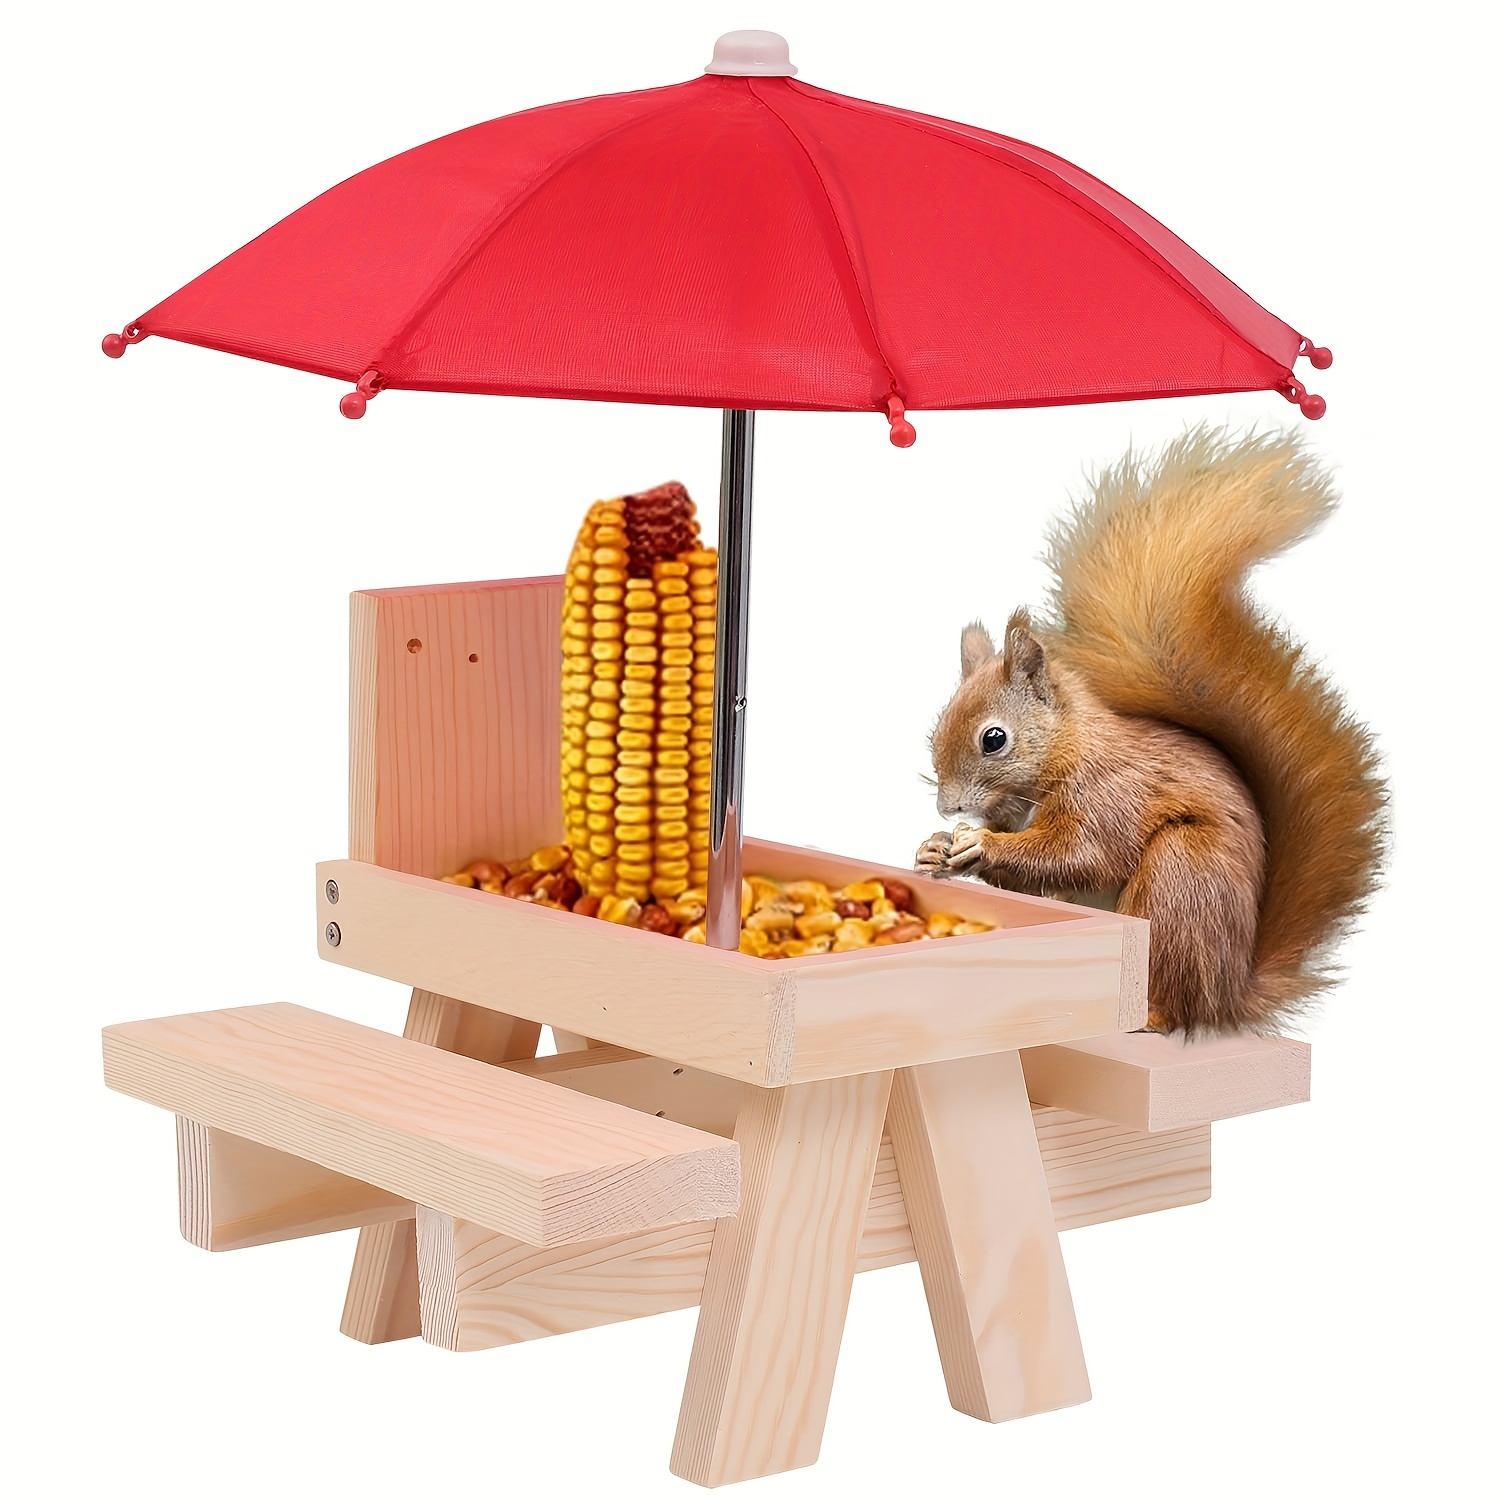 

Mangeoire pour écureuils en bois rustique avec parasol rouge, design créatif de table de pique-nique extérieure, décoration de bureau en bois massif, station d'alimentation durable pour la faune